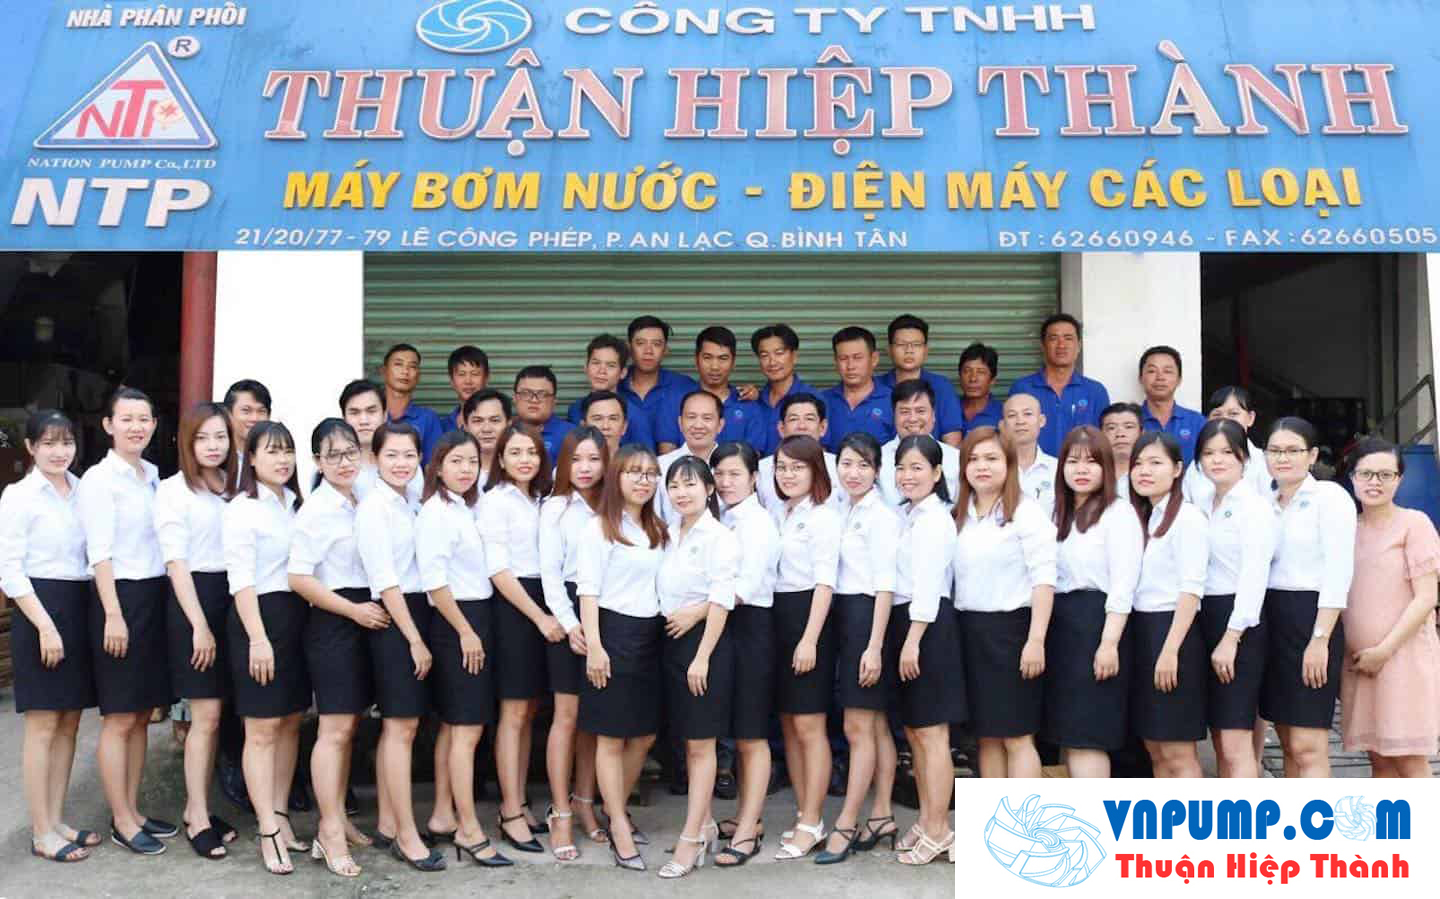 Nhà phân phối độc quyền thương hiệu NTP tại công ty TNHH Thuận Hiệp Thành